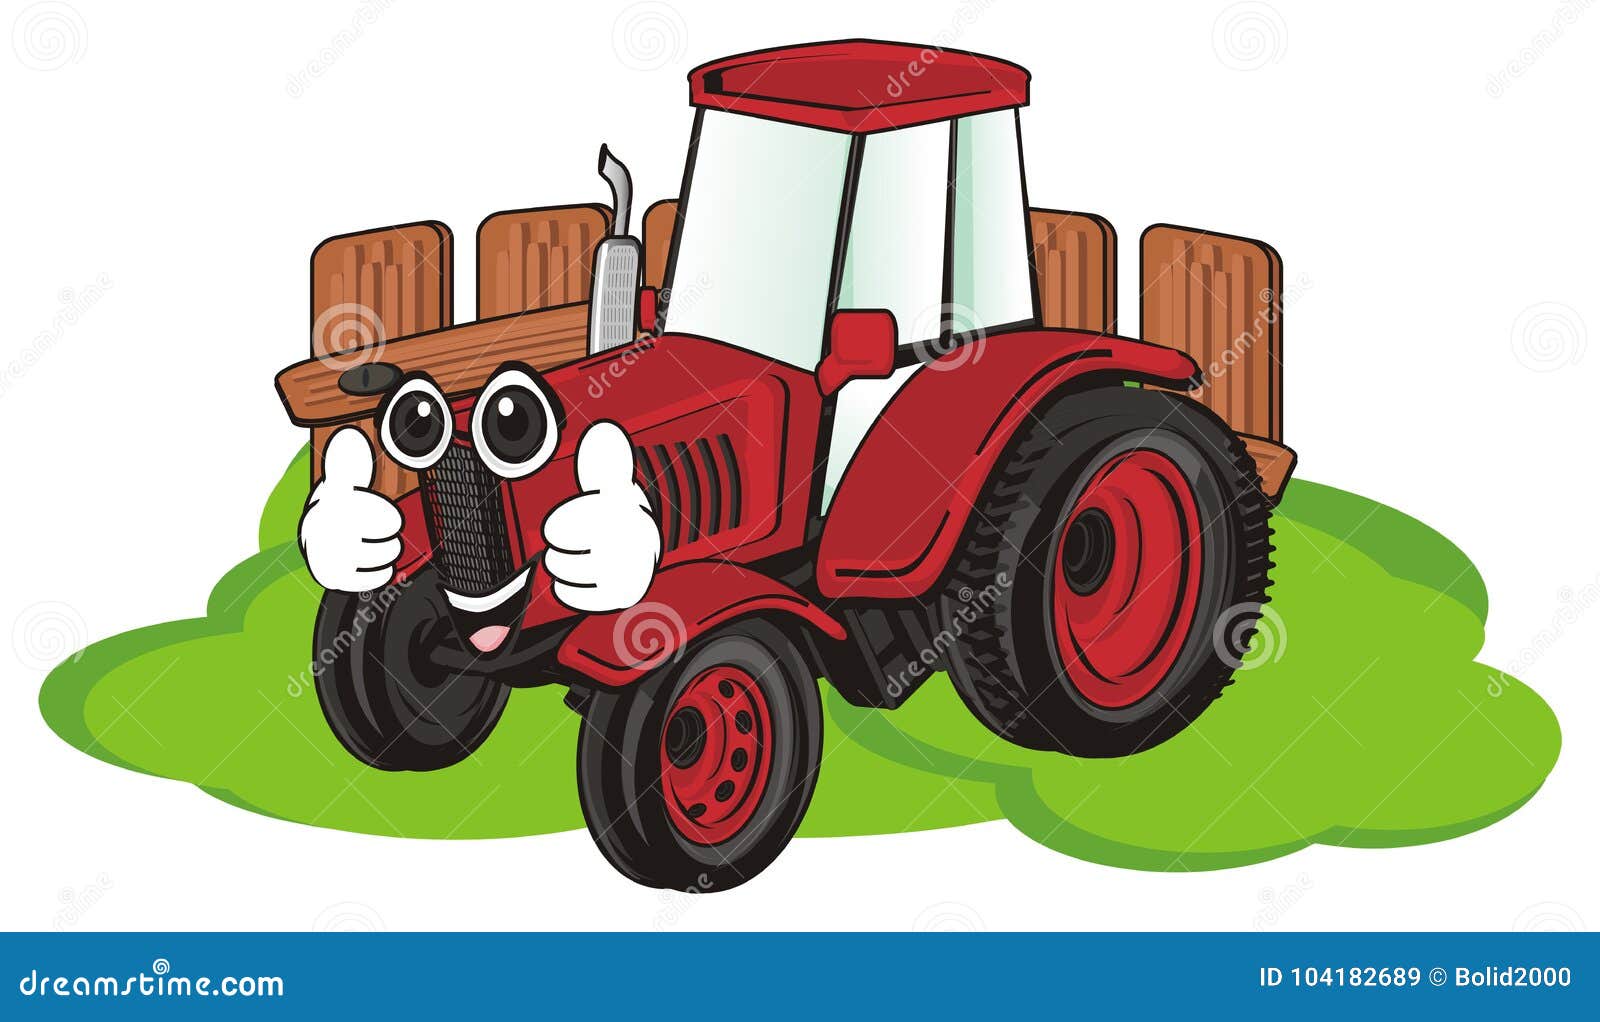 Включи красный трактор. Трактор мультяшный. Трактор красный трактор для малышей. Трактор с глазками. Красный трактор мультяшный.